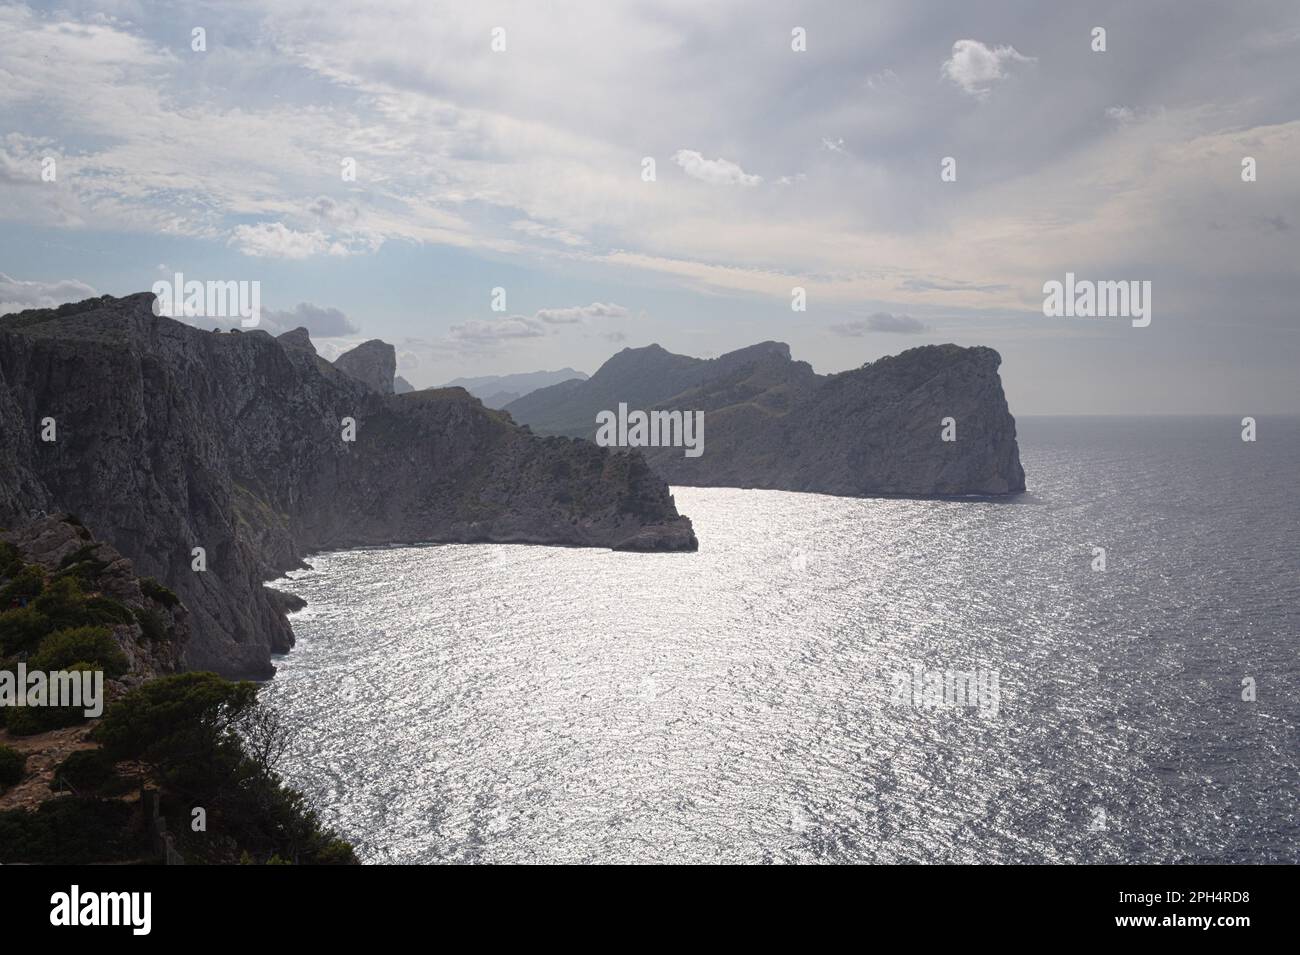 Die atemberaubende Felsenküste von Formentor auf Mallorca - ein unvergessliches Reiseziel. Stock Photo